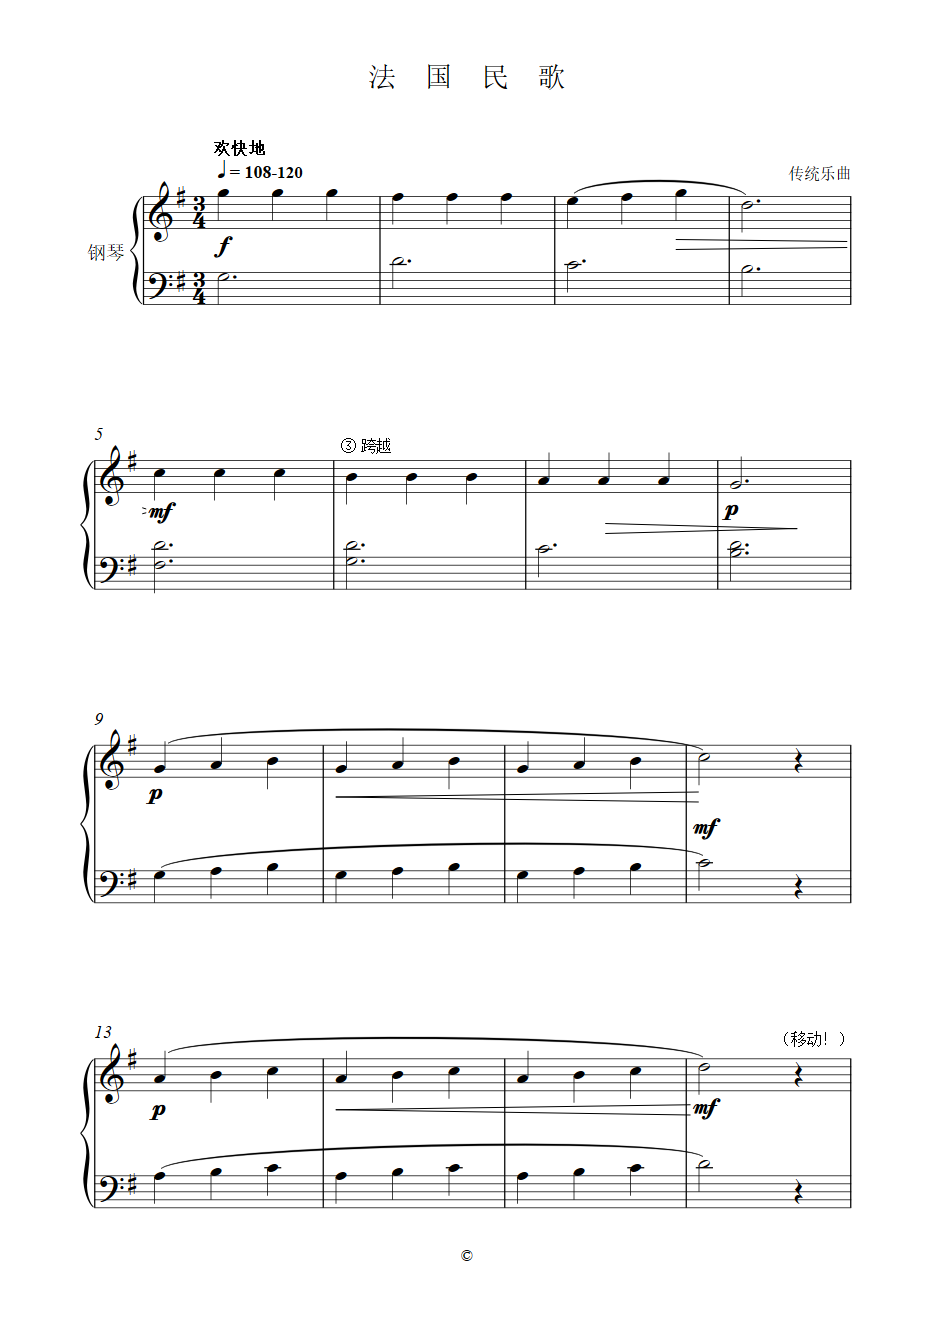 法国民歌大提琴五线谱图片